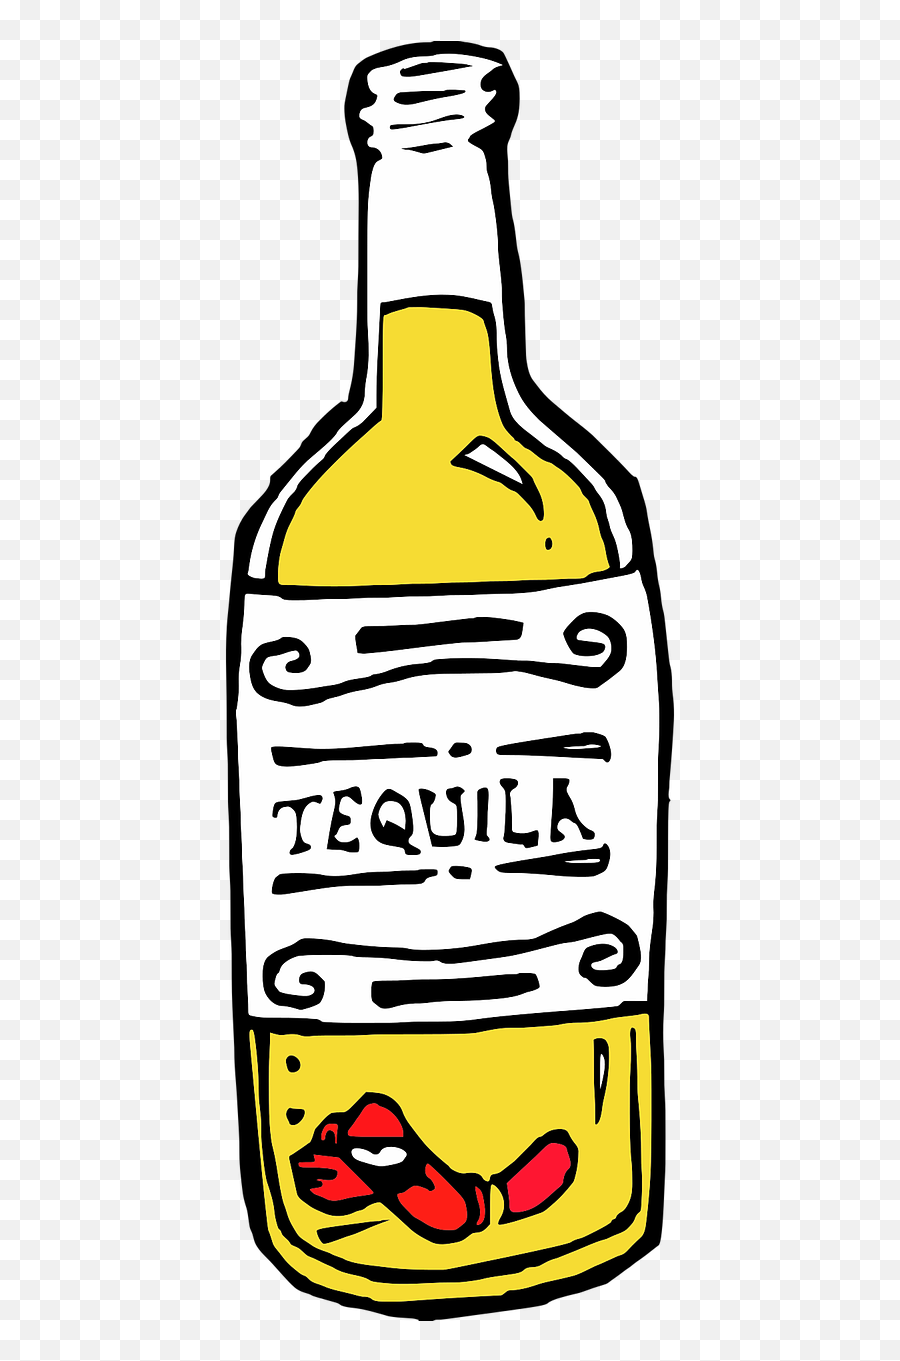 Tequiladrink Alcoholtransparentalcoholdrink - Free Image Tequila Png Transparente,Bottle Transparent Background